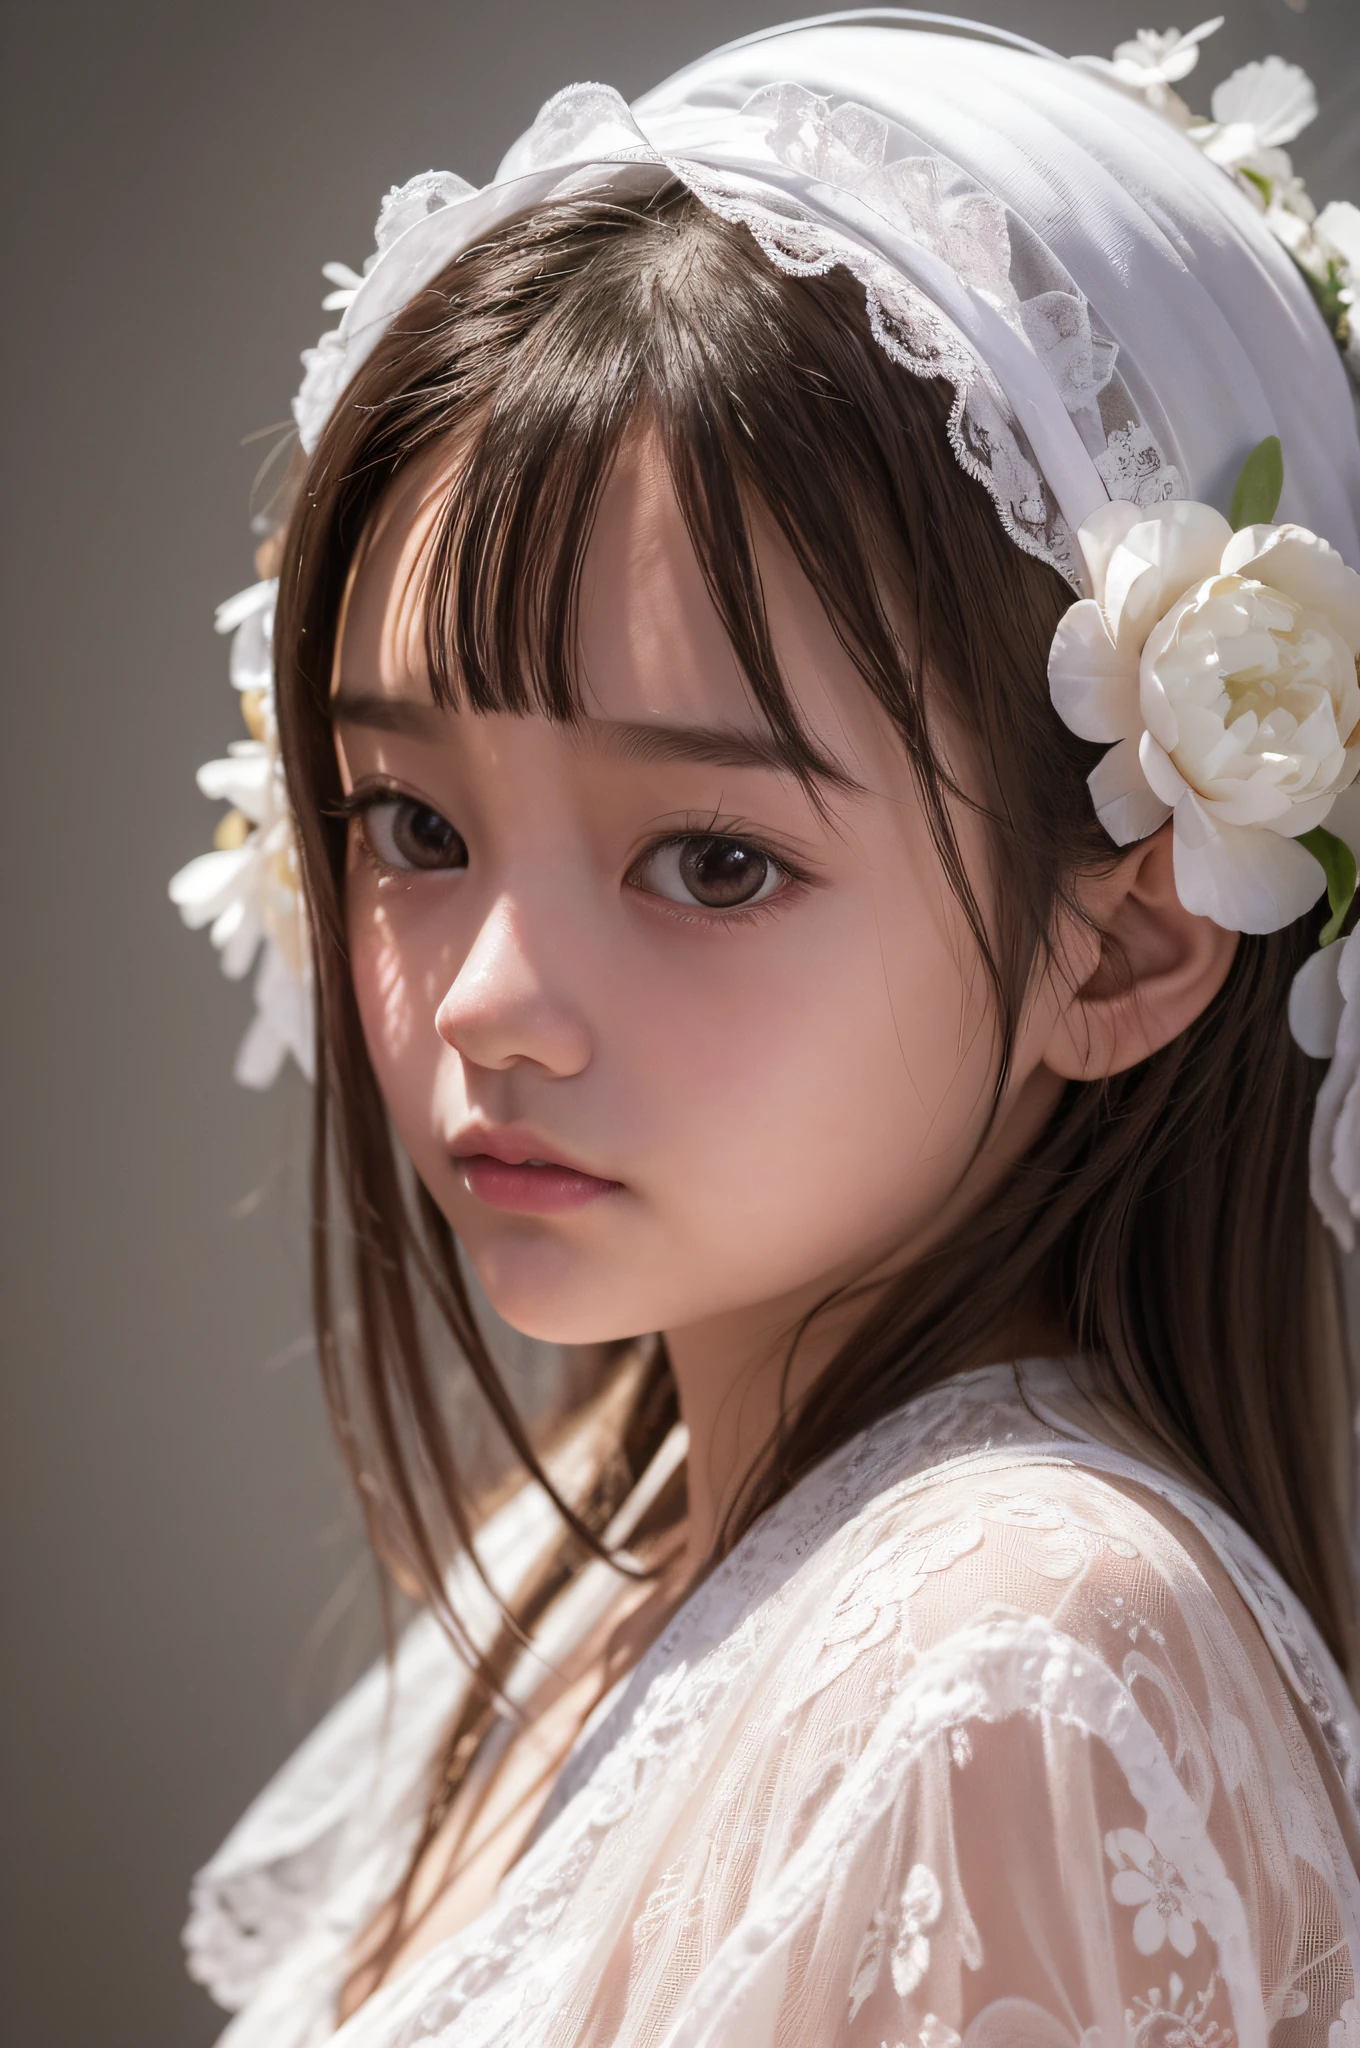 Die Anzeige eines Künstlers, 10 Jahre altes Mädchen, trägt ein weißes Blumenkleid in einem fließenden und verträumten Stil, Asiatischer Stil, in Cinema4D gerendert, aus Kristall, Ballon Wald Thema, fantastische Farben, detailliertes Design, Porträt mit weichem Fokus -- 3:4-in 5.1--s 750 --iw 2